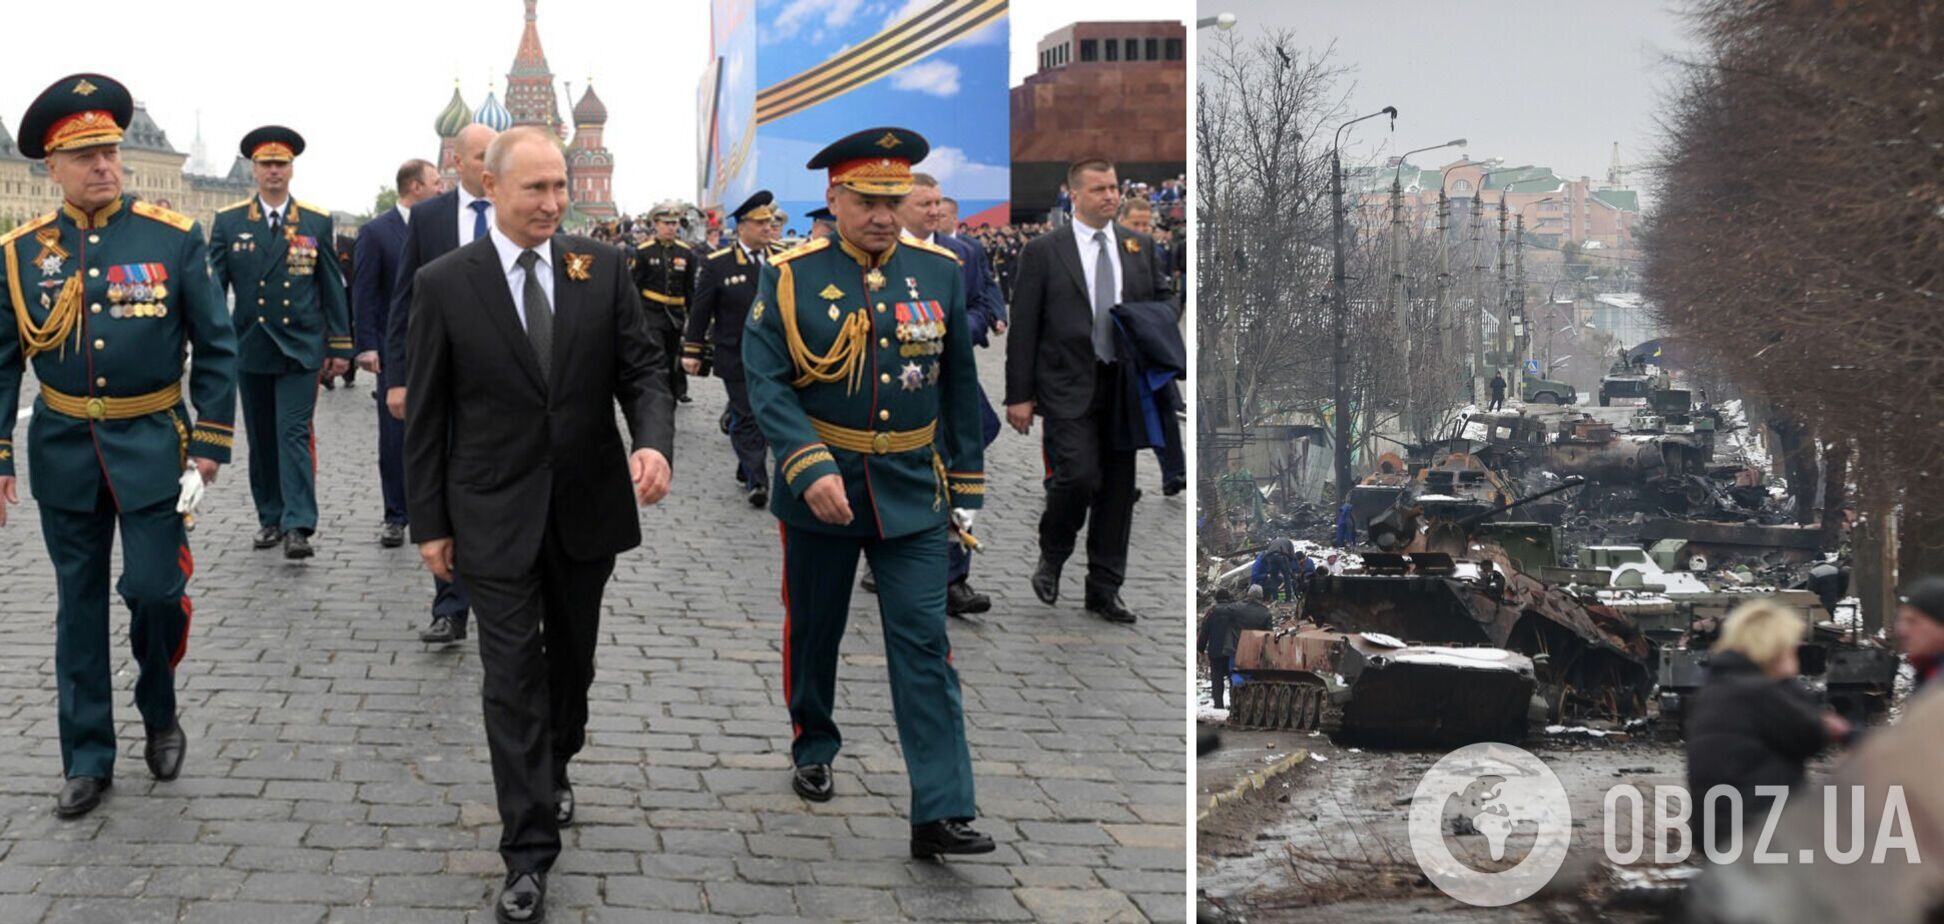 Вторжение Путина достигло пика, но страдания украинцев еще не закончились – генерал-майор США